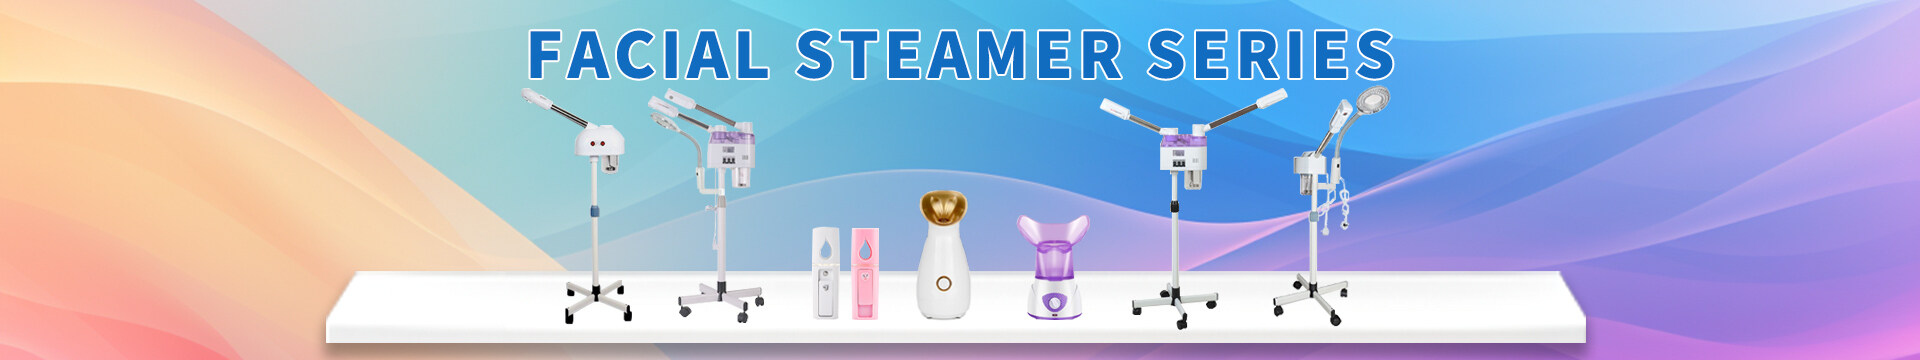 portable facial steamer professional, portable facial steamer with ozone, professional facial steamer hot and cold, professional portable facial steamer